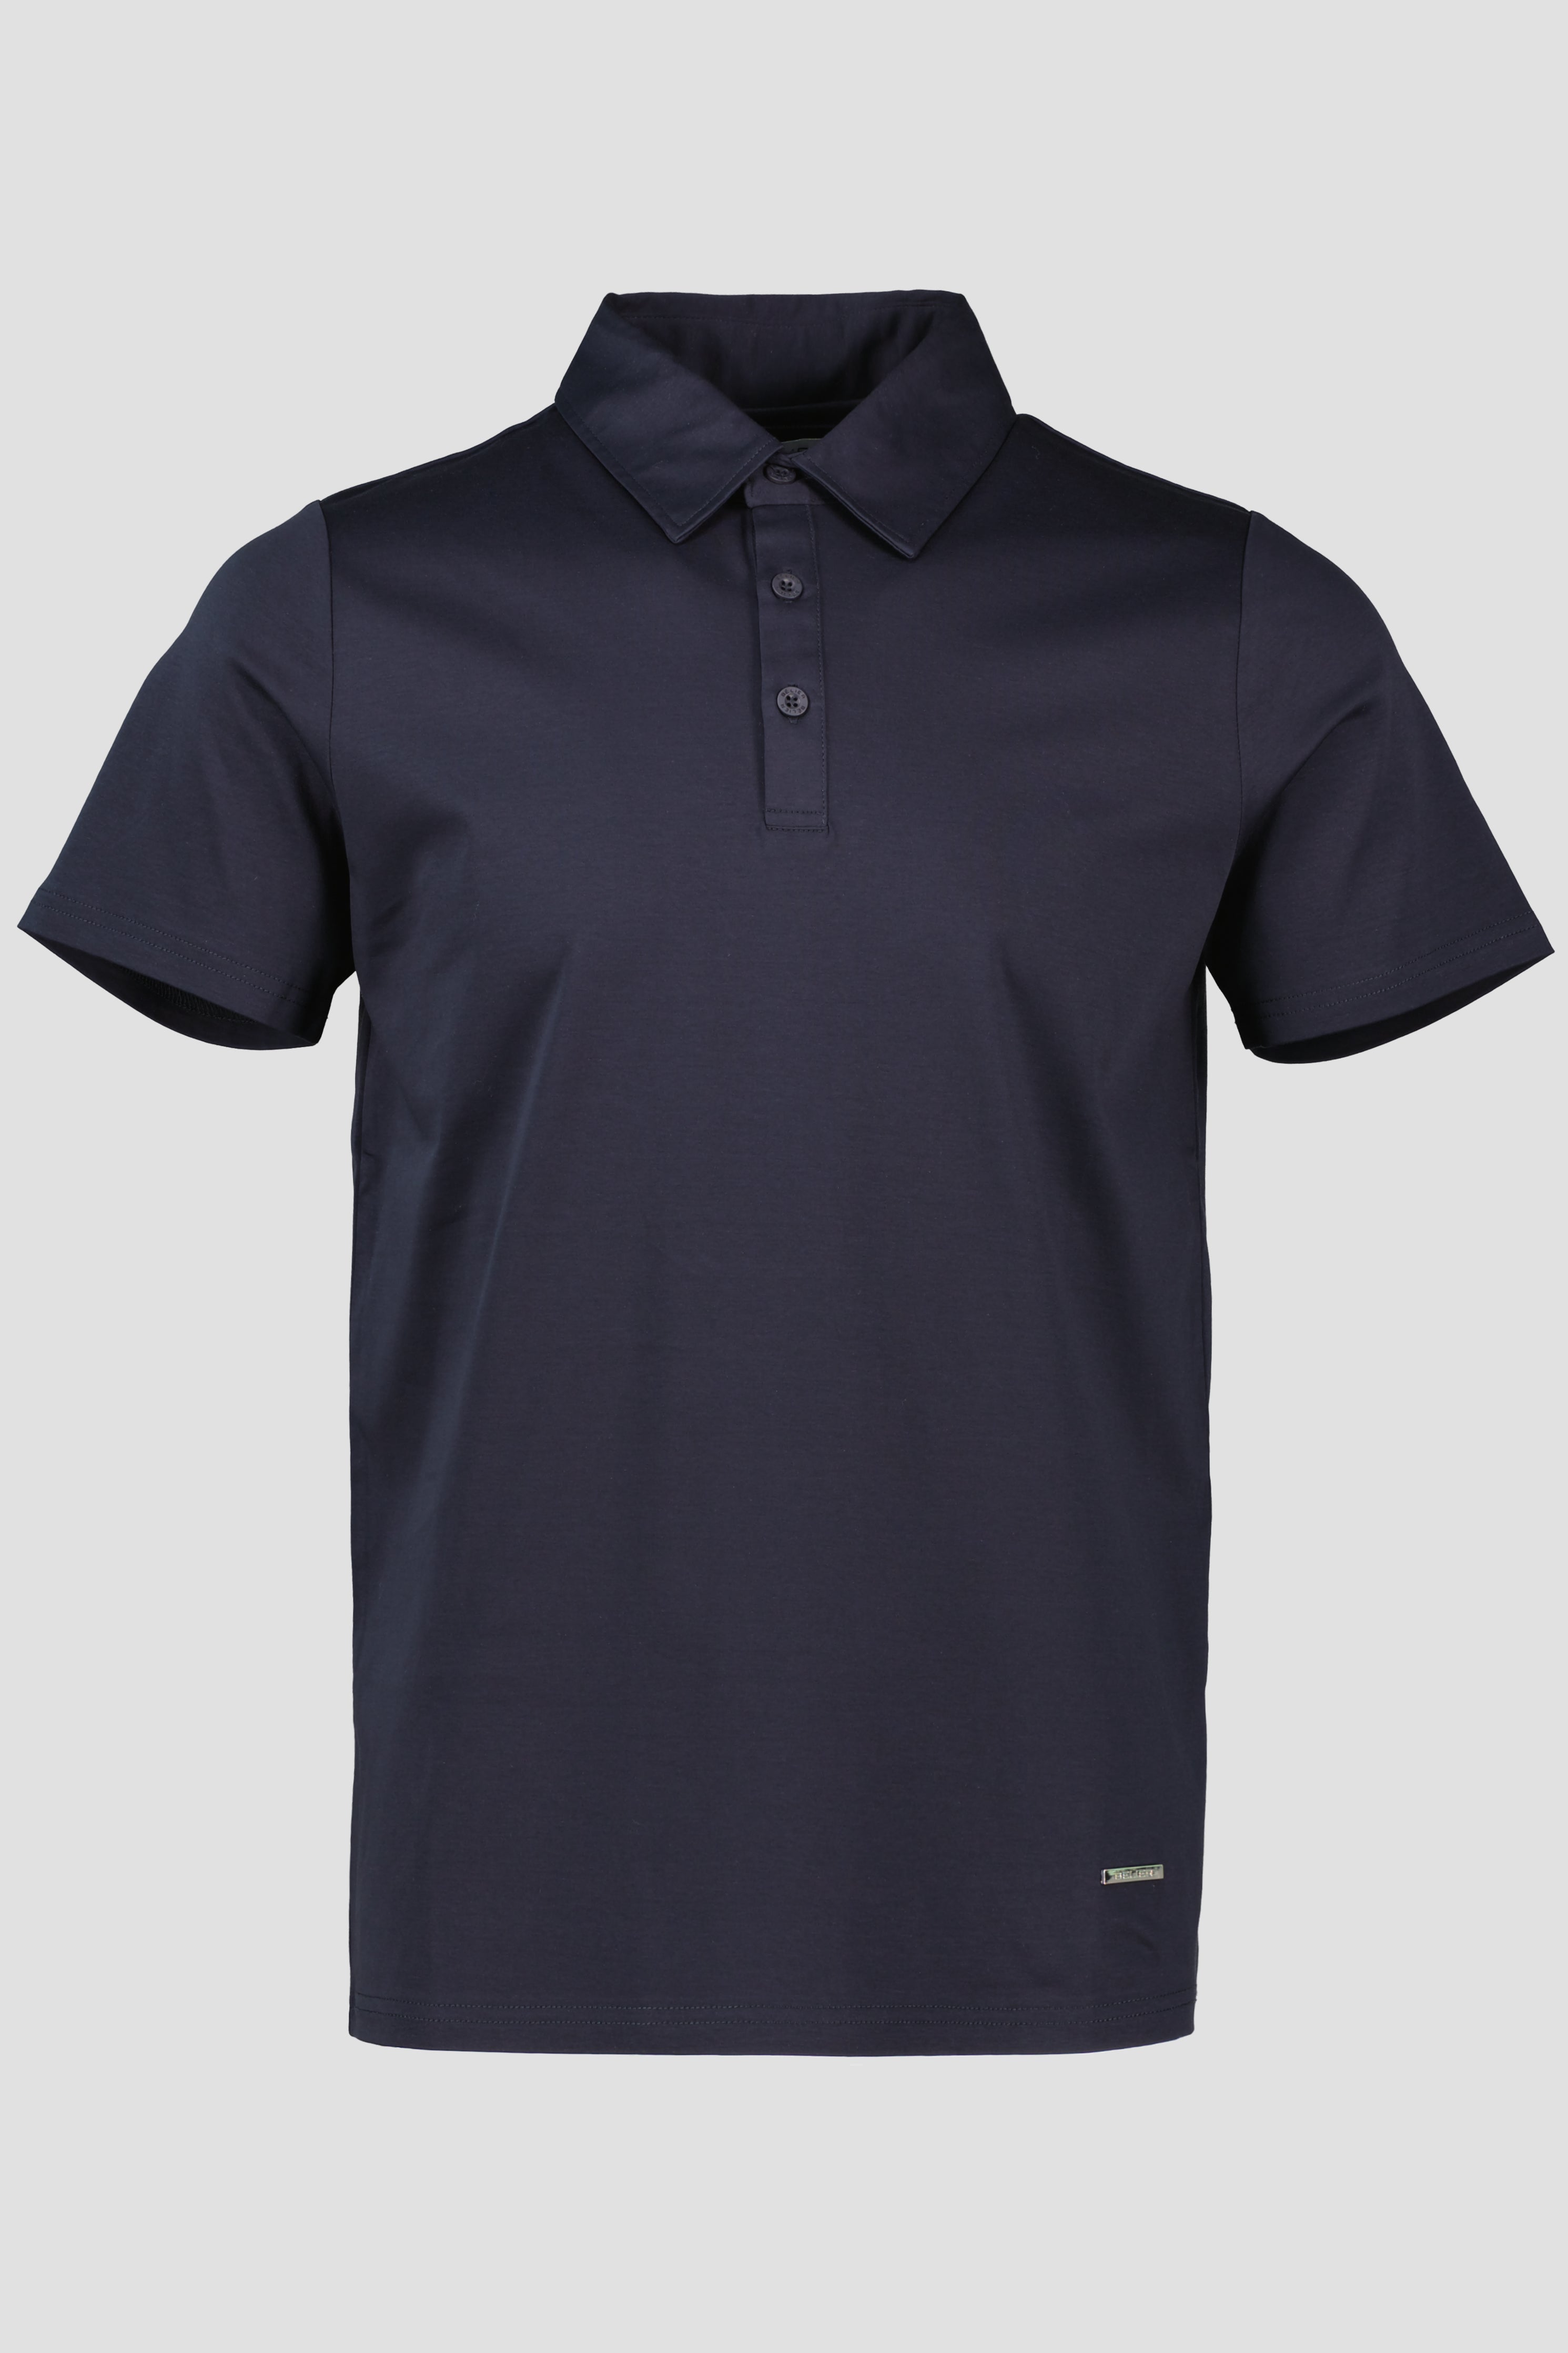 Men's Belier Navy Mercerised Premium Polo Shirt